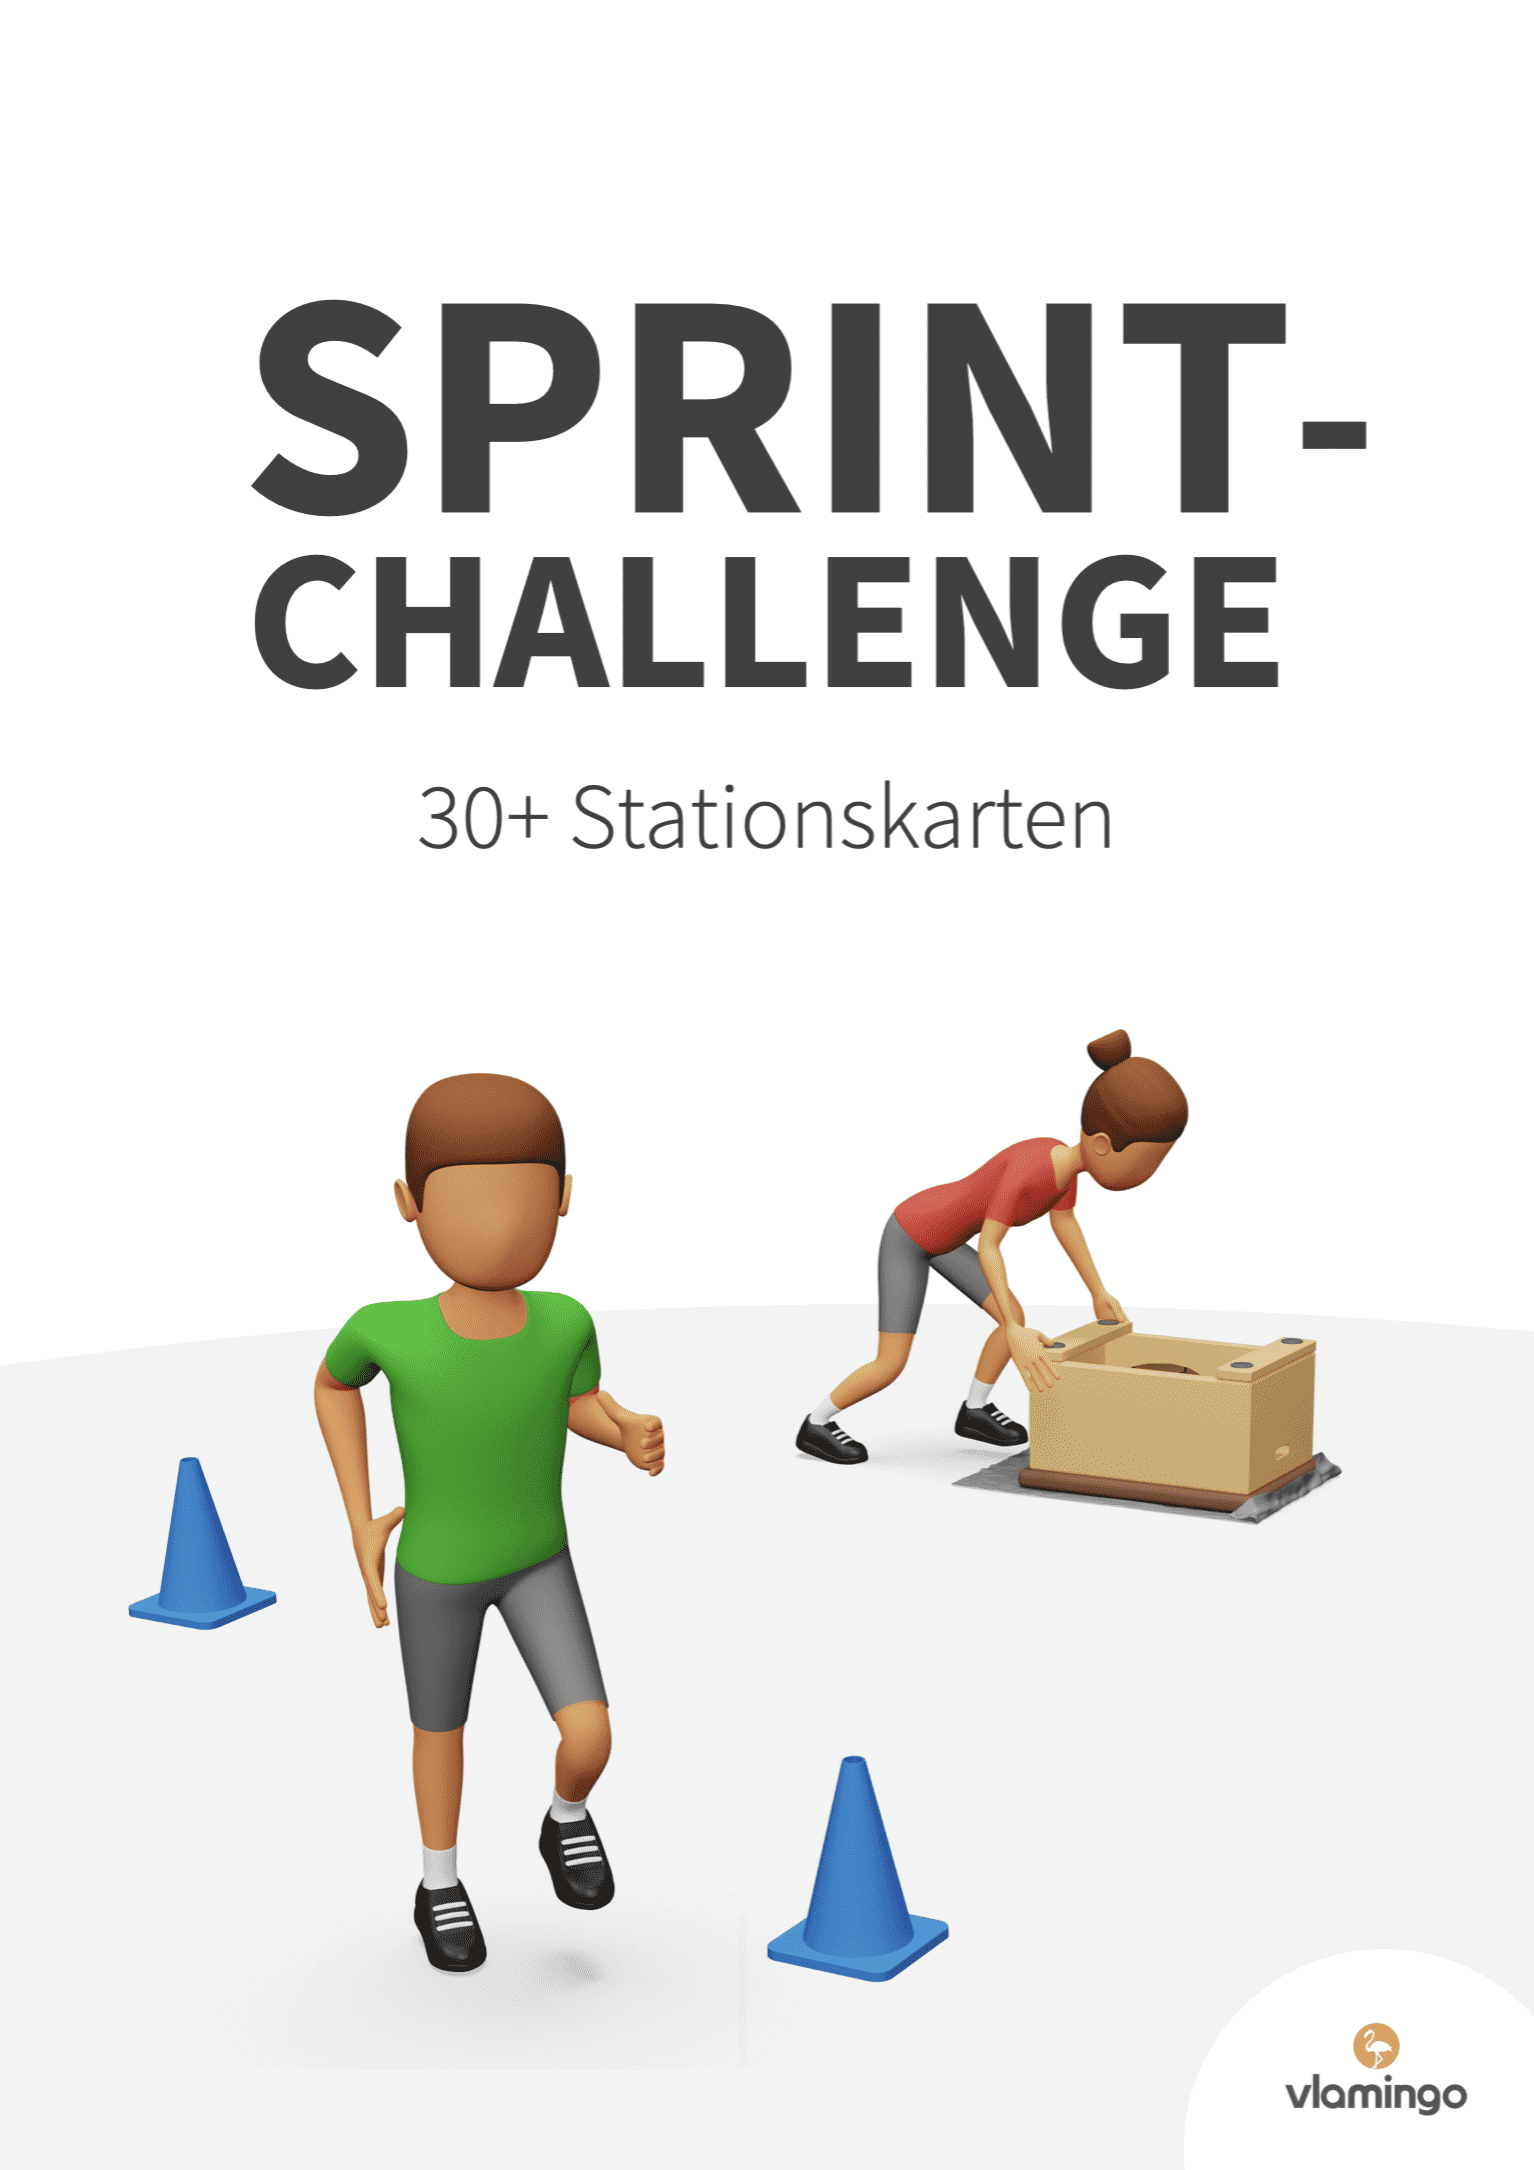 Sprint-Challenge